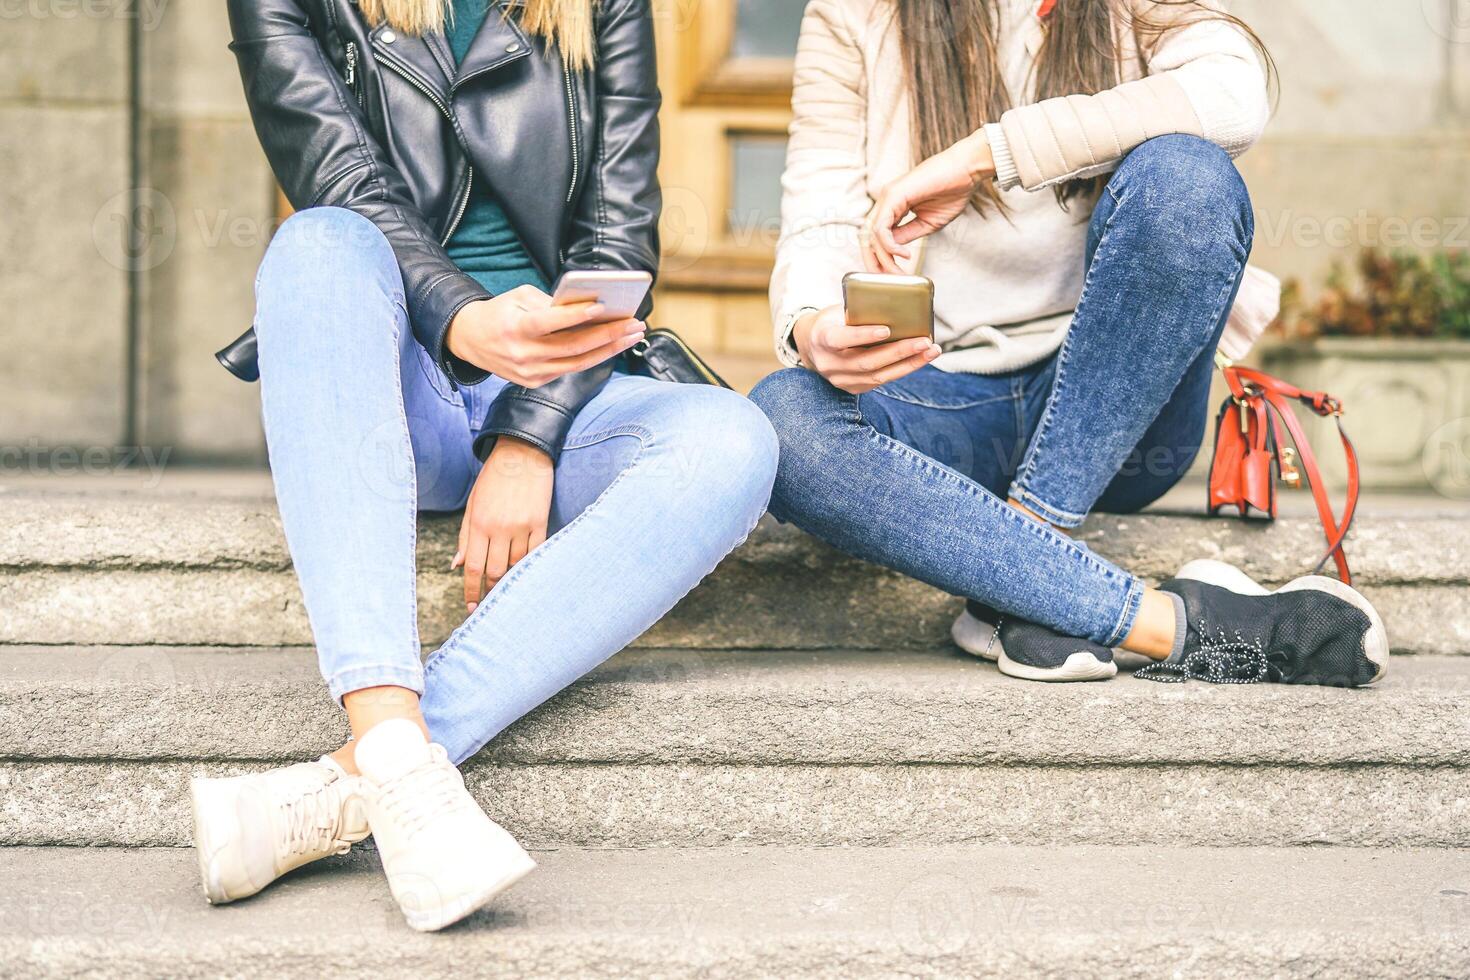 ung kvinnor använder sig av mobil telefon medan Sammanträde på trappa av ett urban område - ung generation Beroende till ny smart telefoner elektronisk enheter - begrepp av social, teknologi, livsstil foto